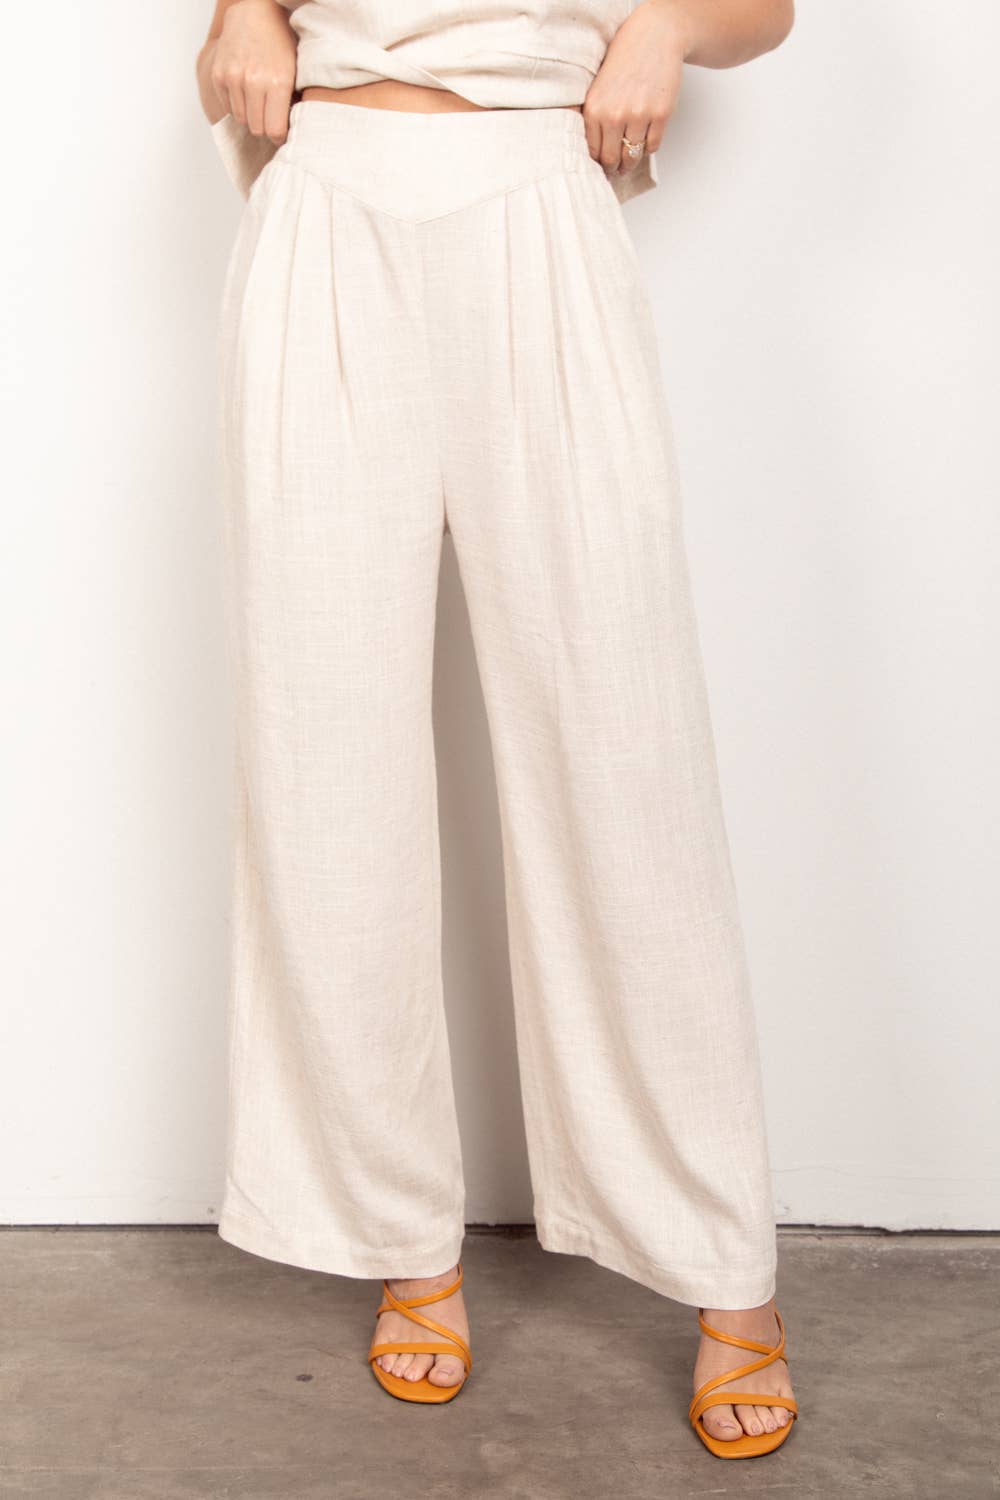 Solid Woven Linen Sleeveless Top & Pants Set - OATMEAL